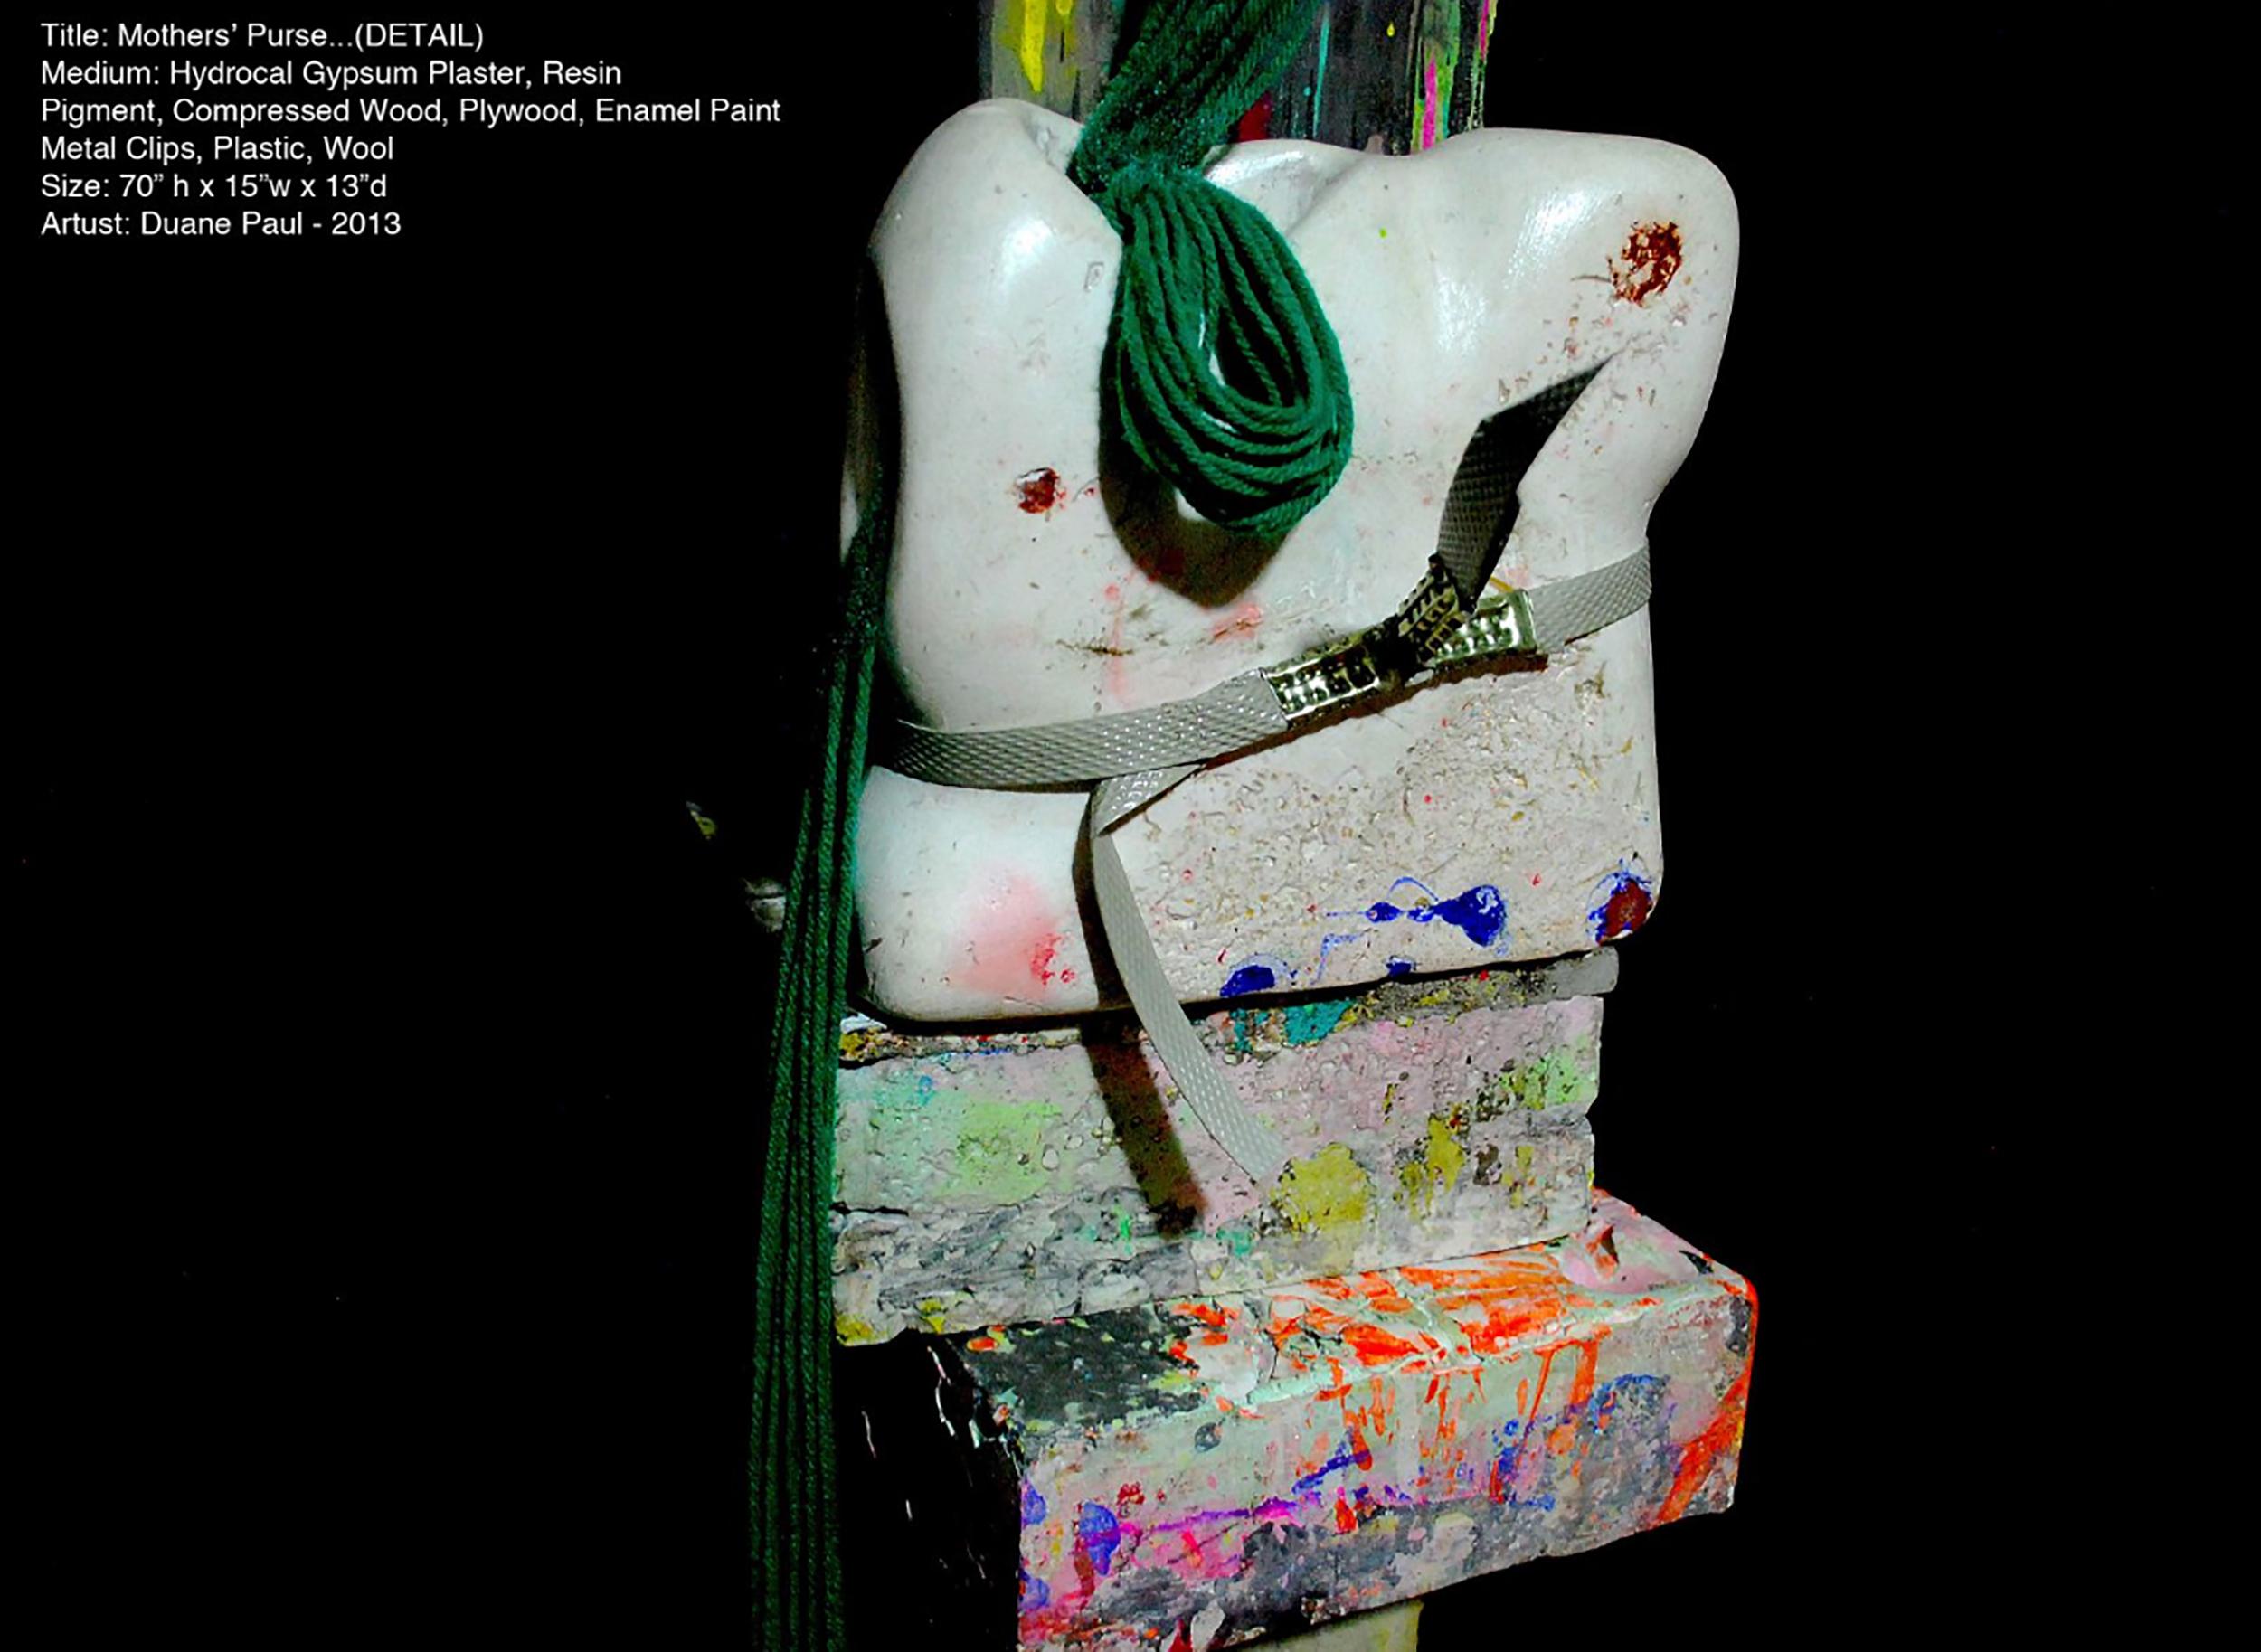 Le travail de Duane Paul peut être qualifié d'innovant, de dynamique et d'intime. Ses sculptures utilisent toutes des formes organiques colorées, qui agissent comme un langage personnel. L'expérience ludique et sensuelle de son travail explore